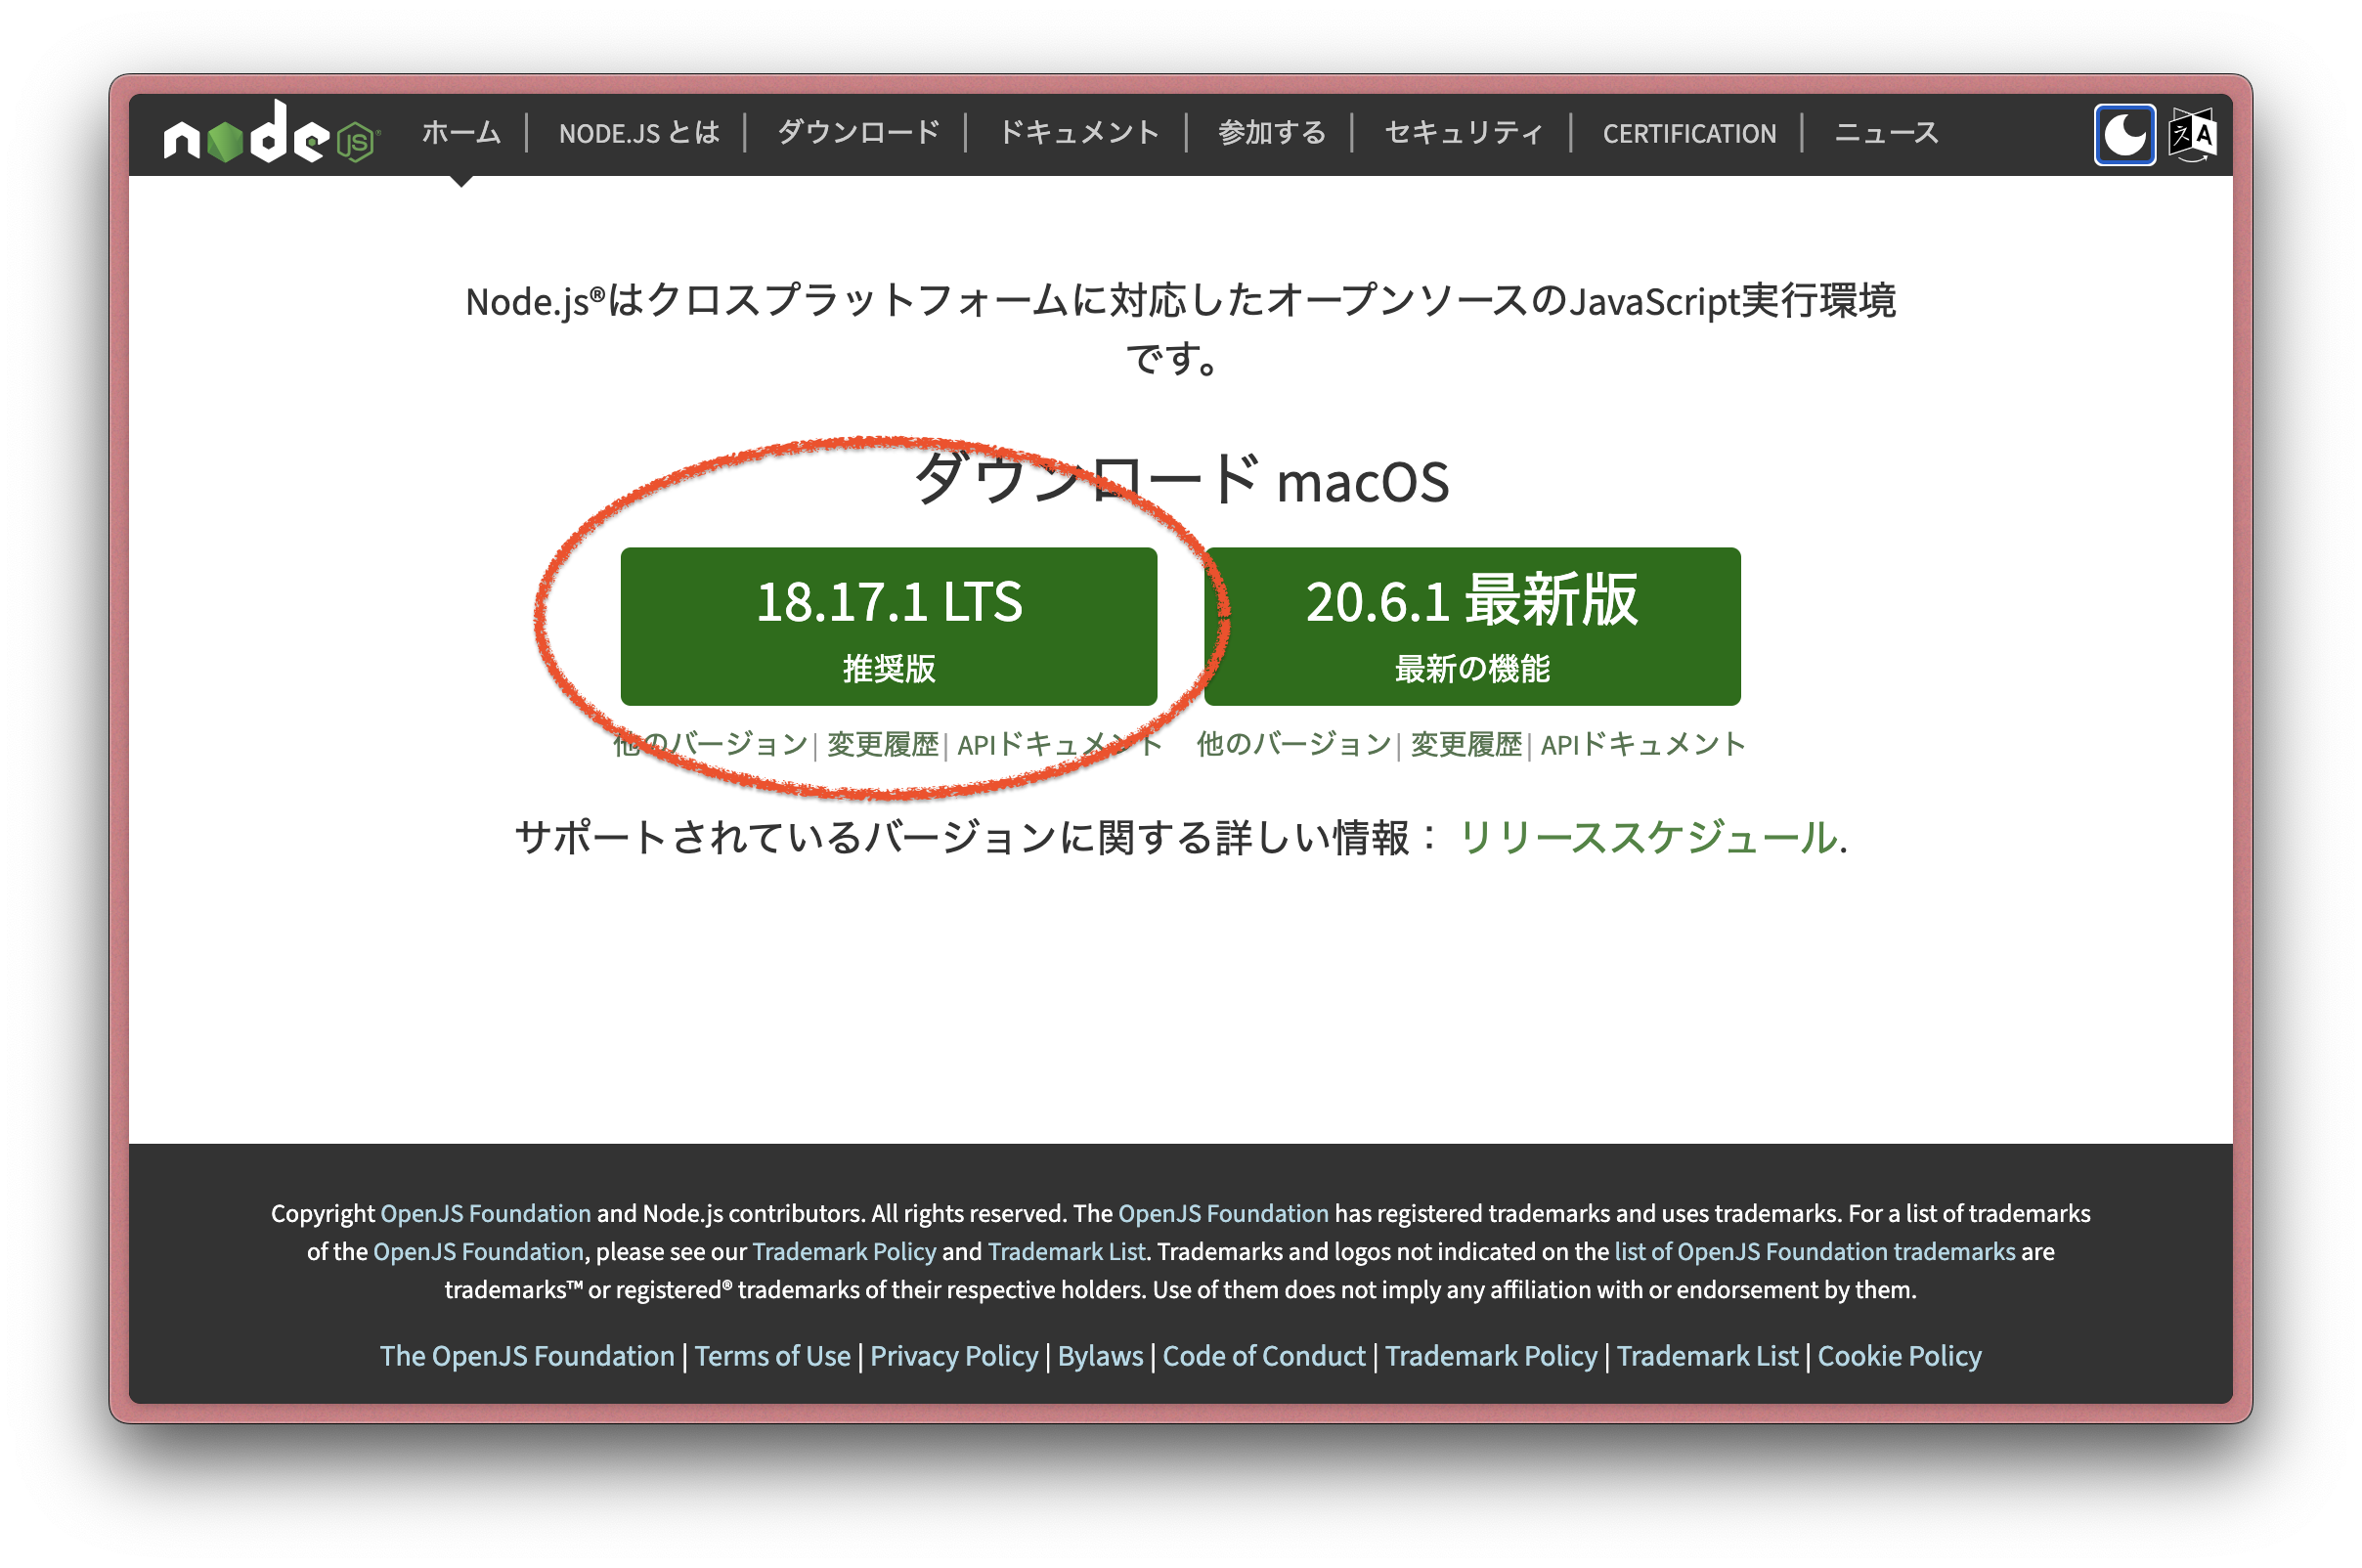 Node.jsの公式サイト。中央左側に"18.17.1 LTS 推奨版"と記載されている。